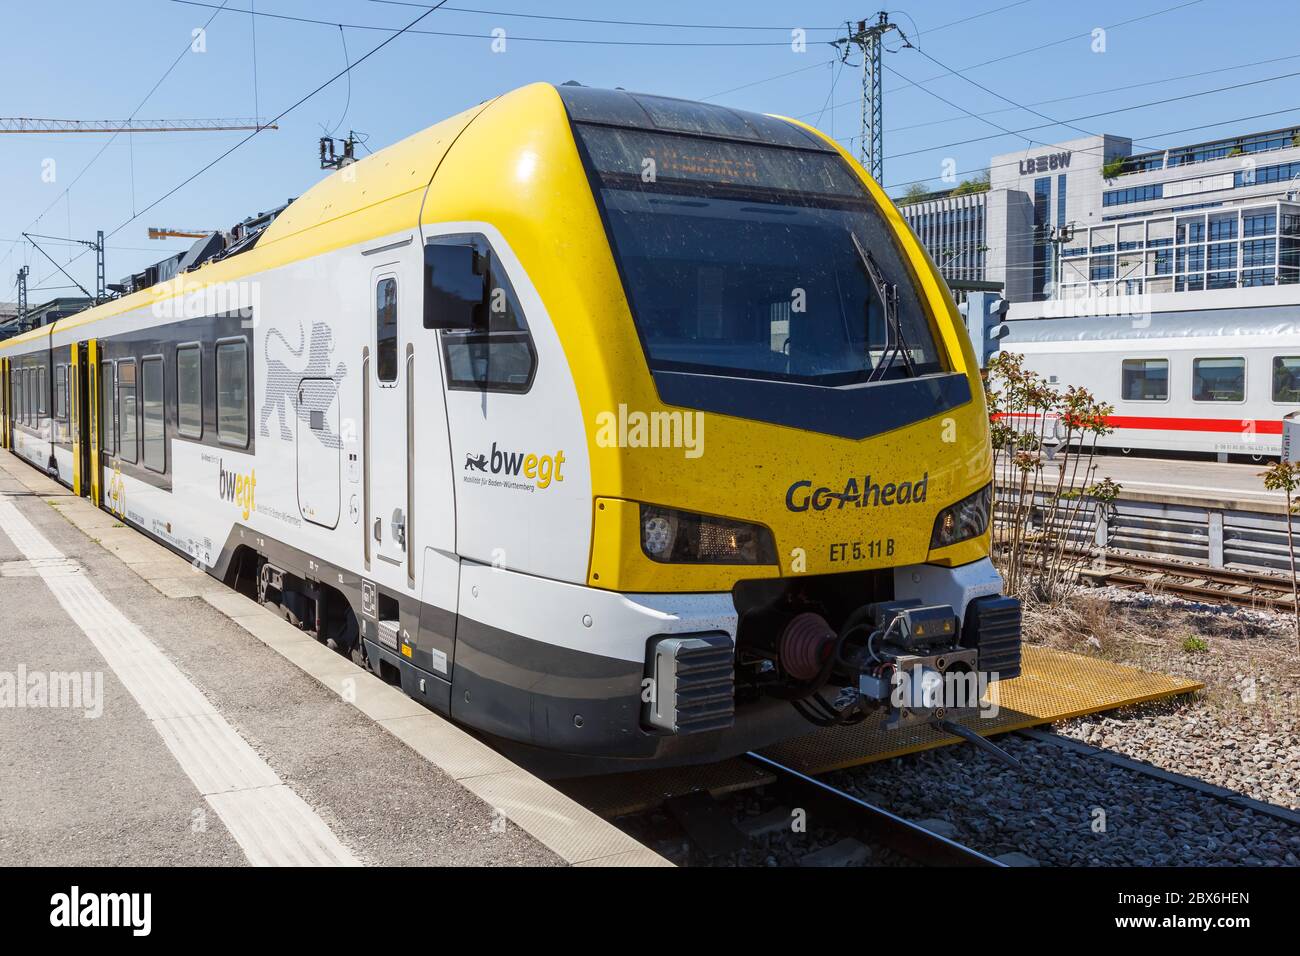 Stoccarda, Germania - 22 aprile 2020: Treno regionale Go-ahead proseguire Stadler FLIRT 3 alla stazione centrale di Stoccarda in Germania. Foto Stock